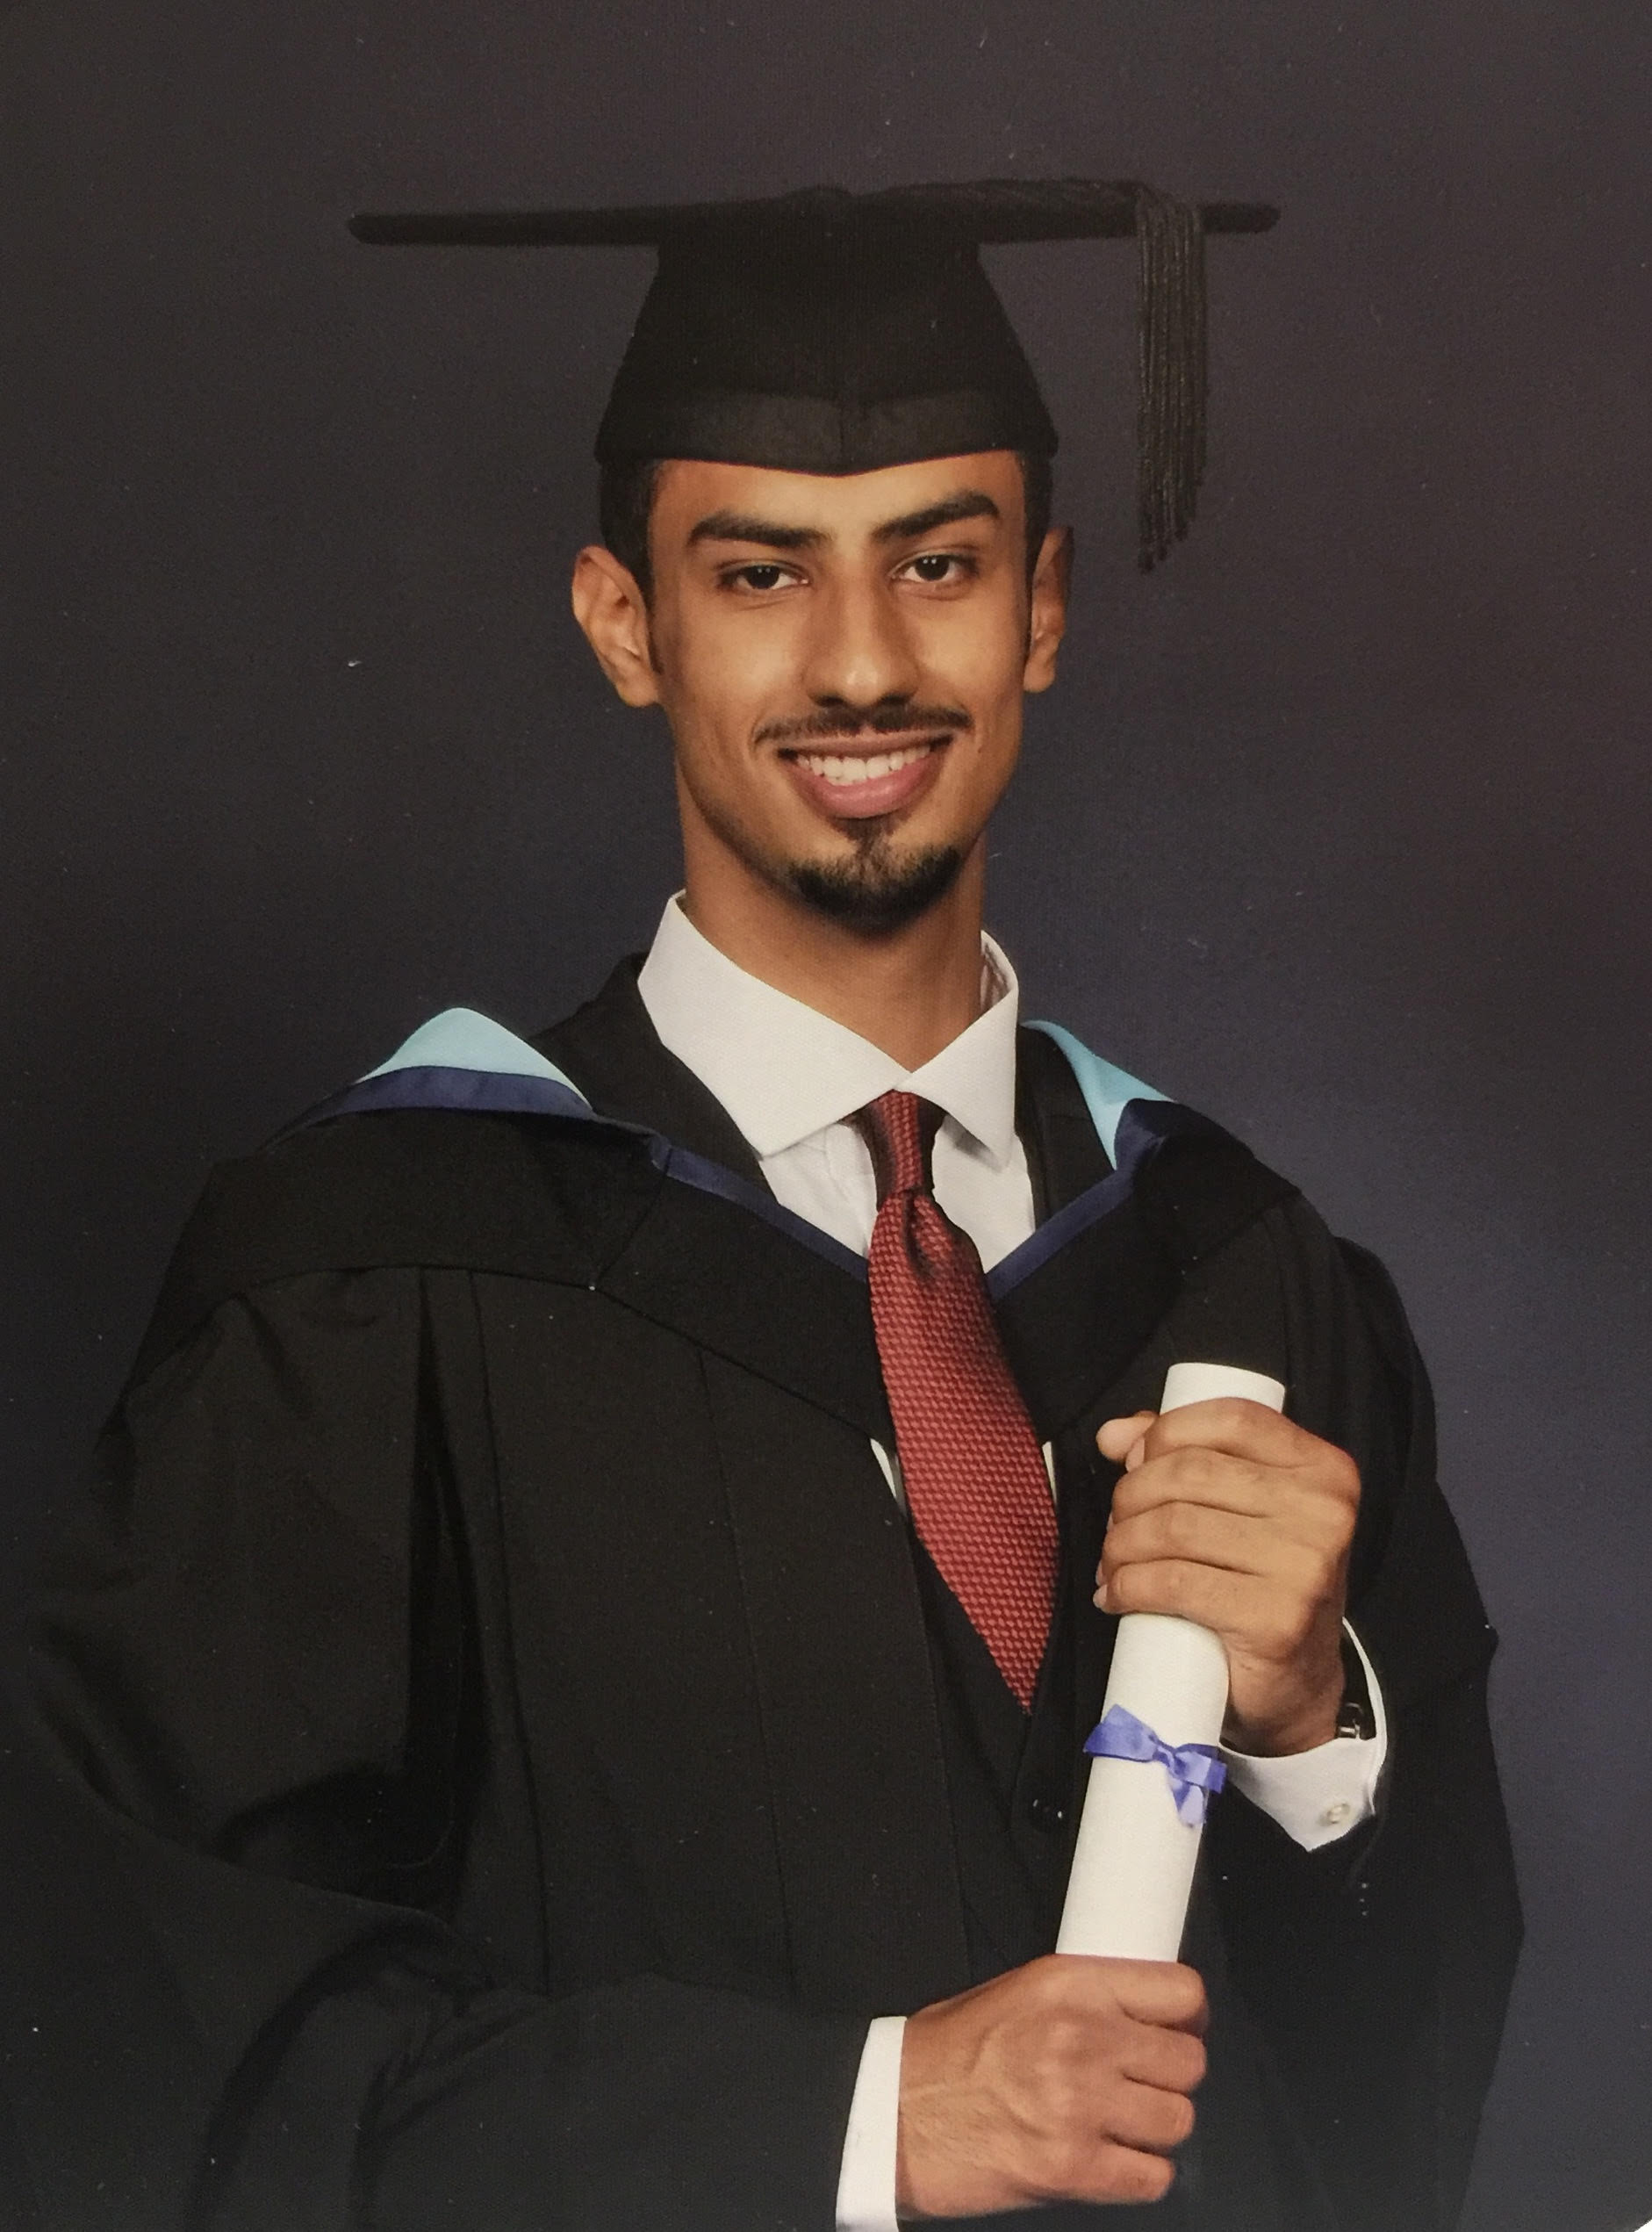 طالب عماني يحقق إنجازًا مشرفًا بجامعة بريطانية